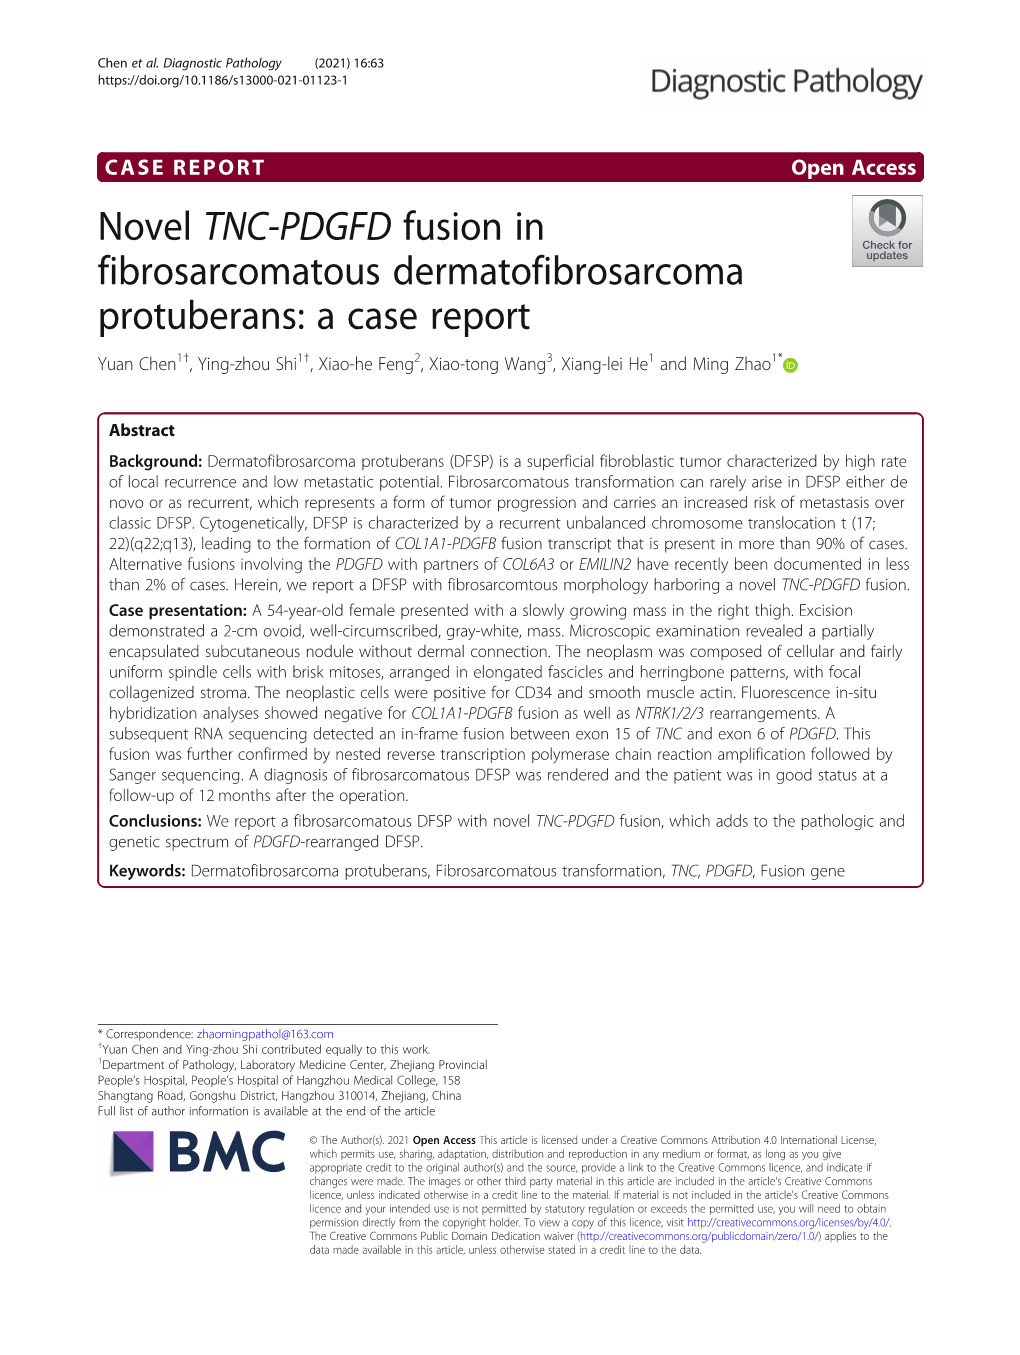 Novel TNC-PDGFD Fusion in Fibrosarcomatous